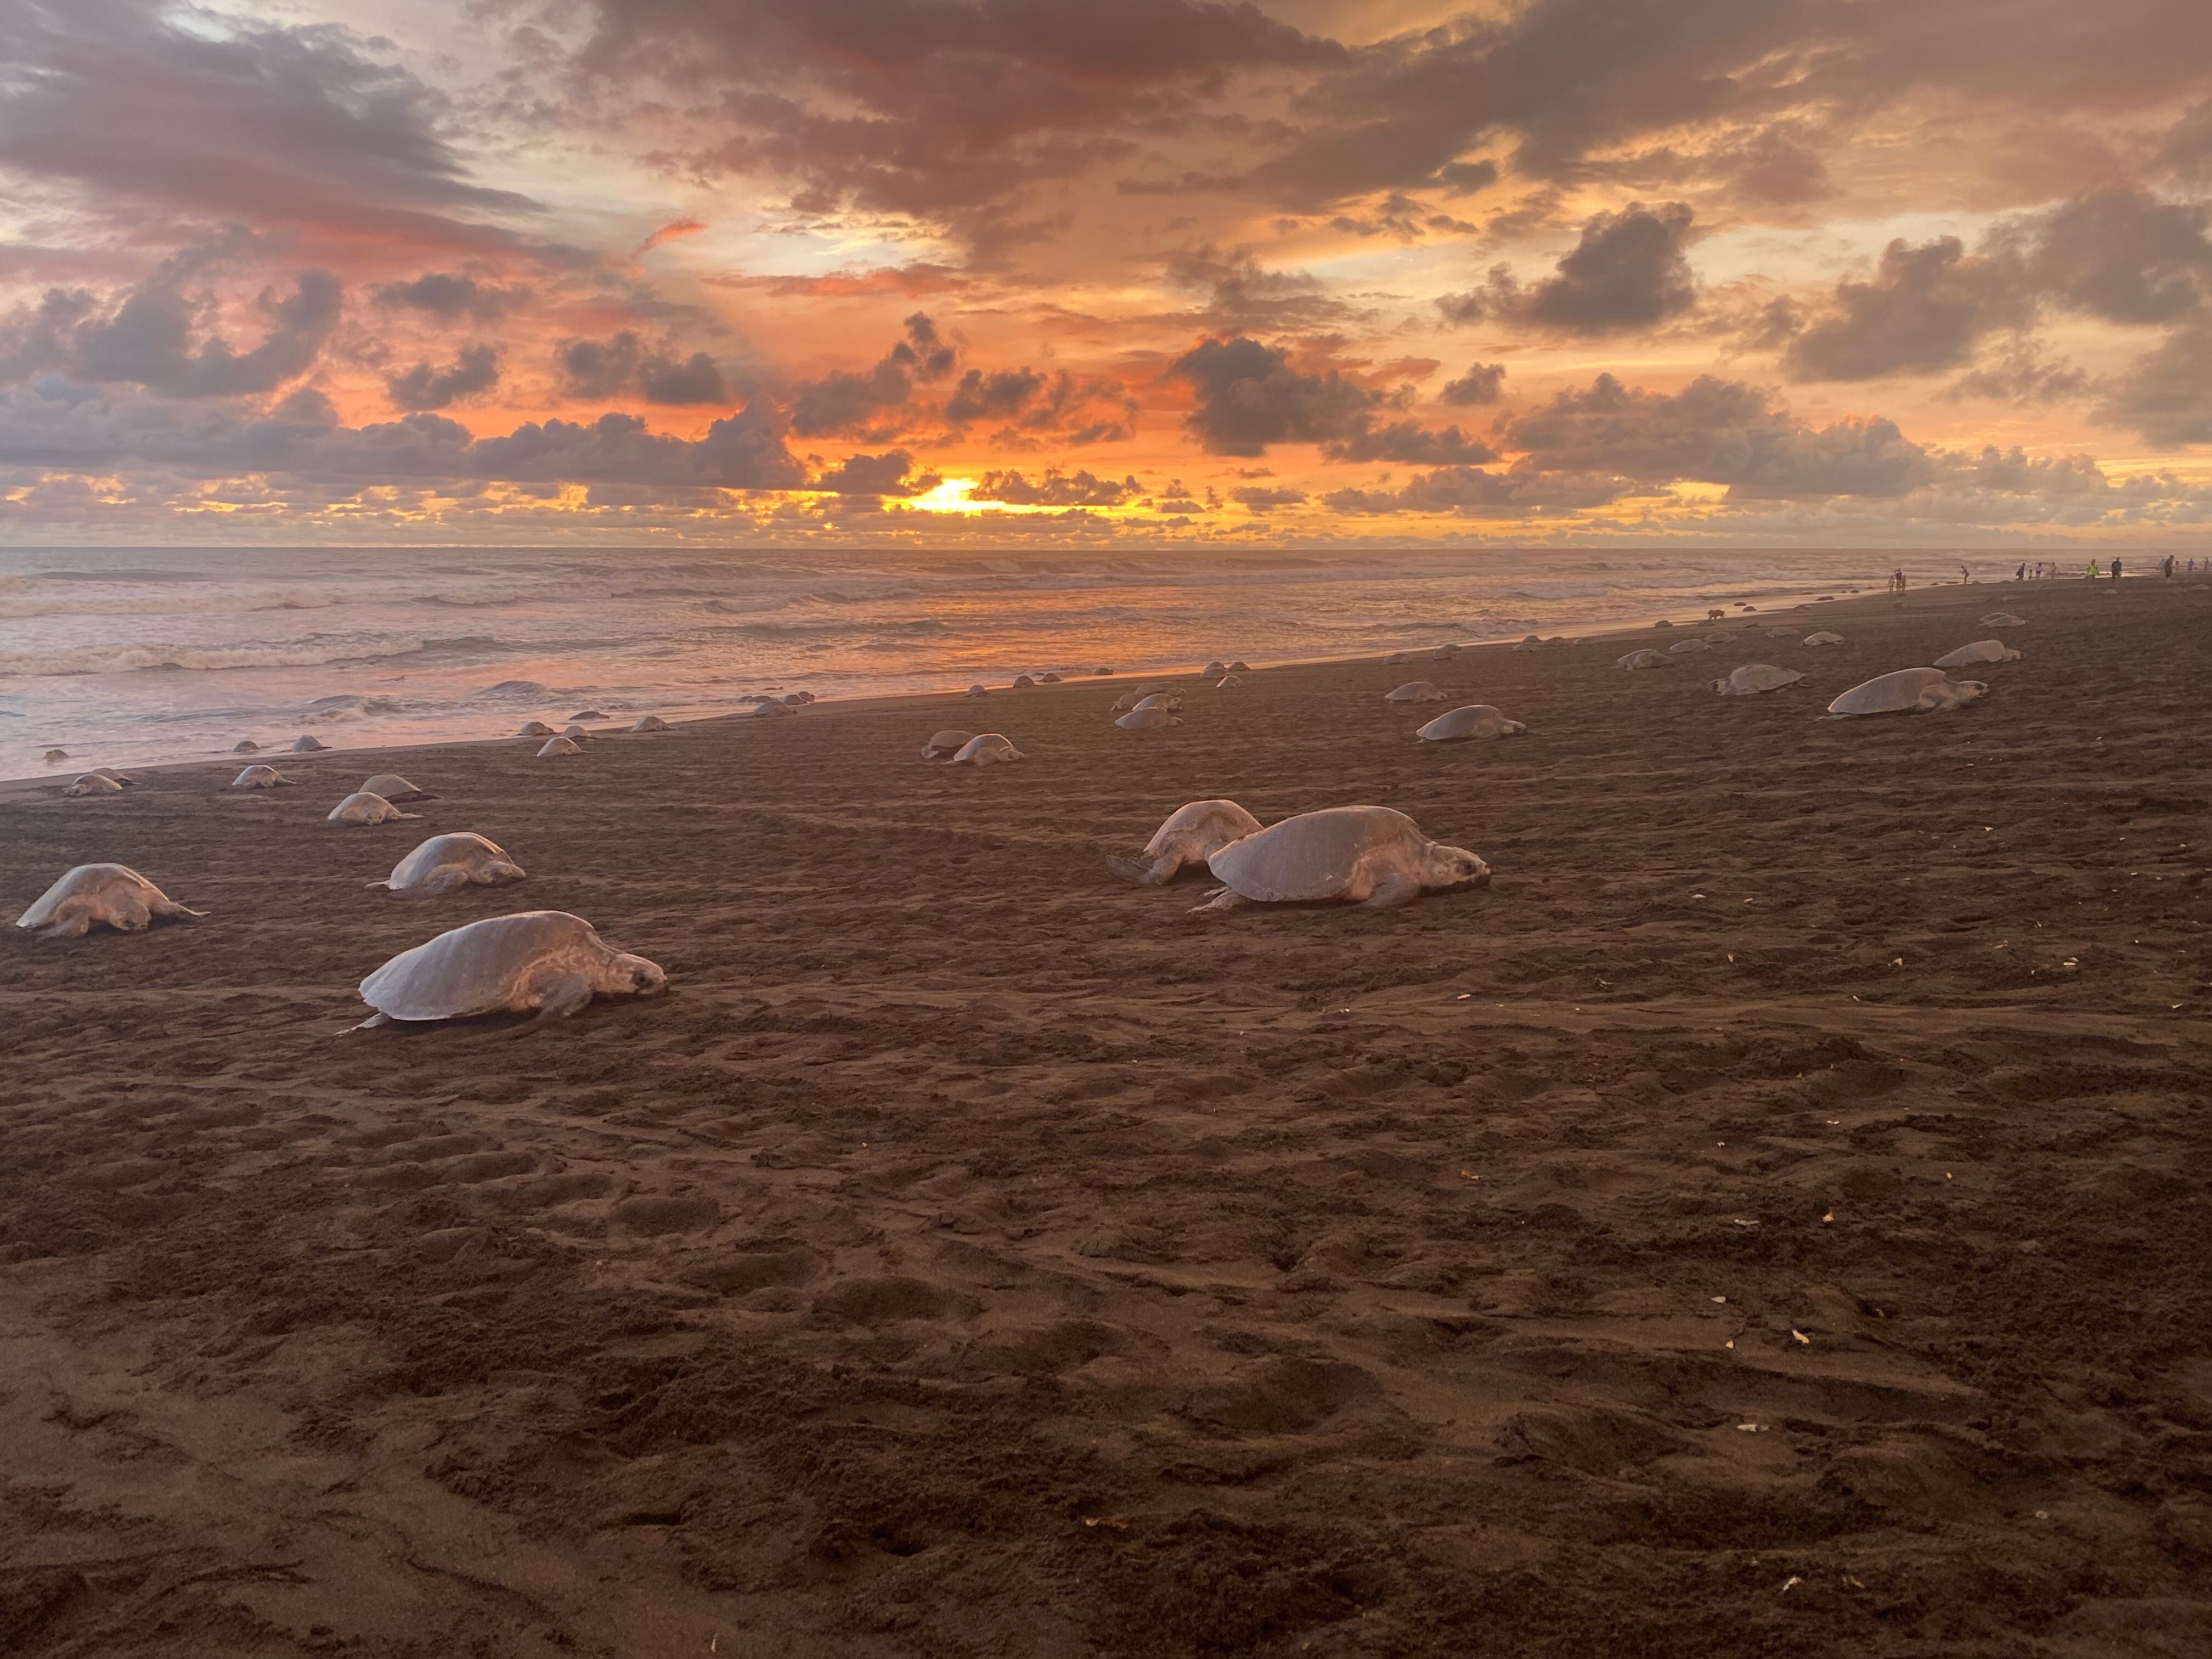 En el refugio Playa Hermosa-Punta Mala desovan tortugas que han visto en peligro sus hábitats ante el abandono de las autoridades. Foto de archivo con fines ilustrativos.